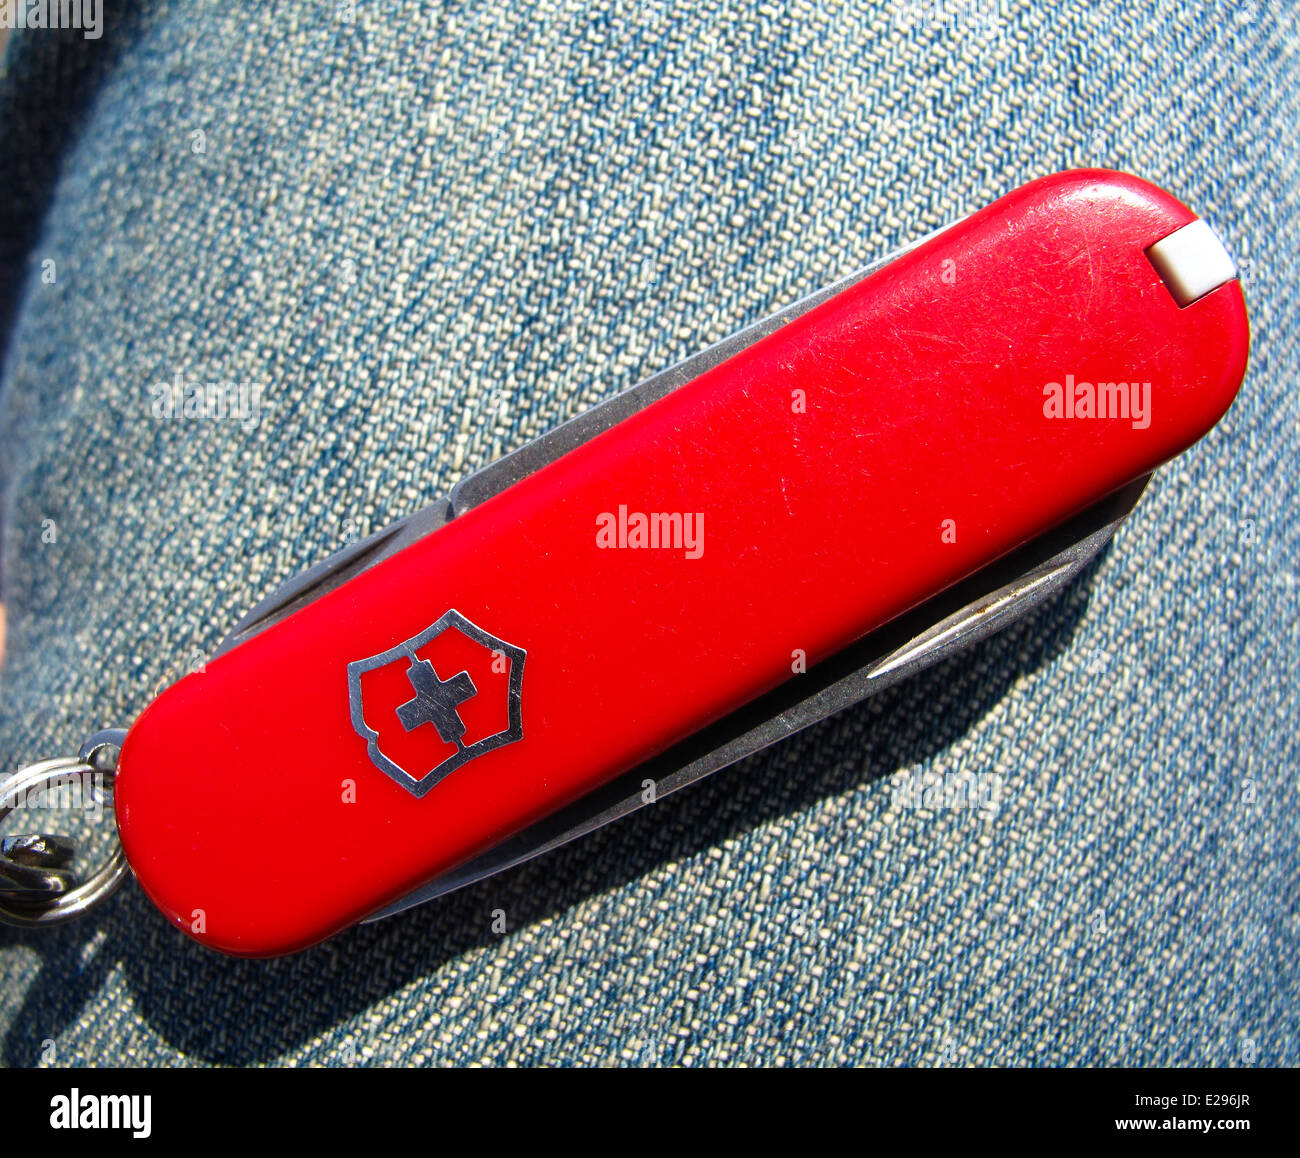 Small Swiss Army pocket knife Stock Photo - Alamy